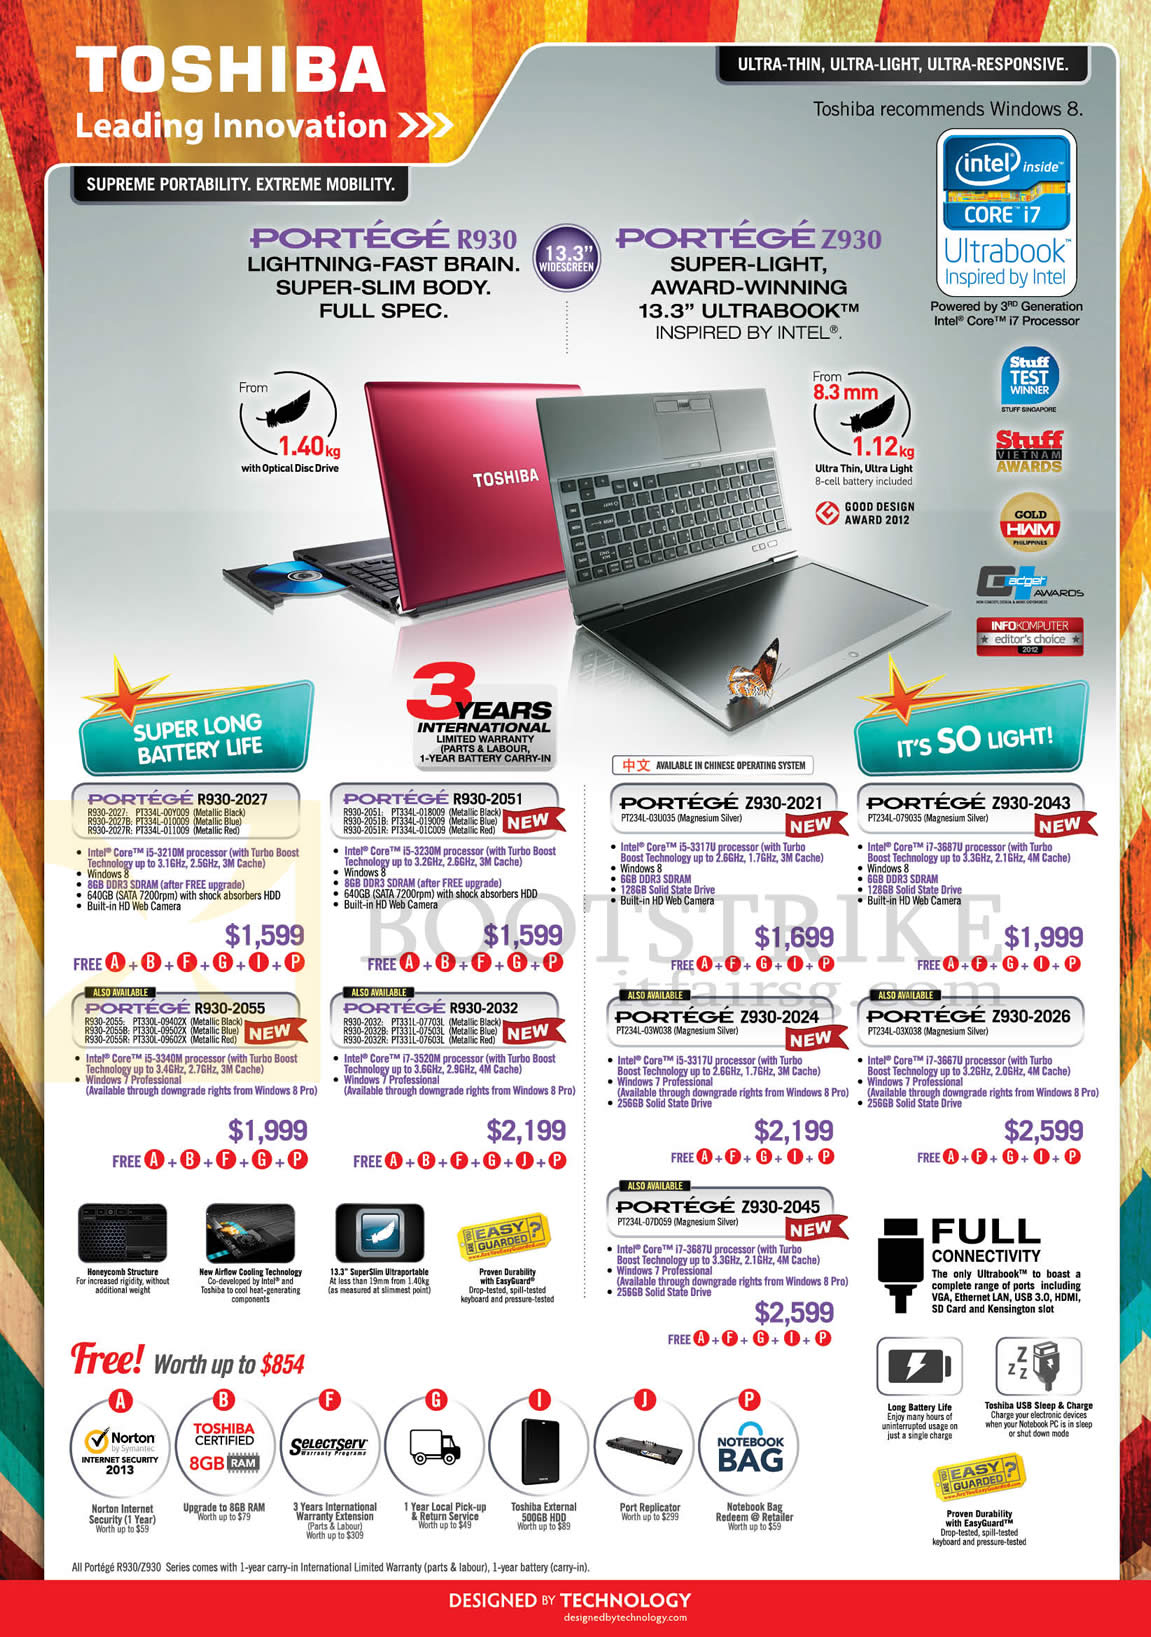 IT SHOW 2013 price list image brochure of Toshiba Notebooks Portege R930-2027, R930-2051, R930-2032, R930-2055, Z930-2045, Z930-2024, 2021, 2026, 2043